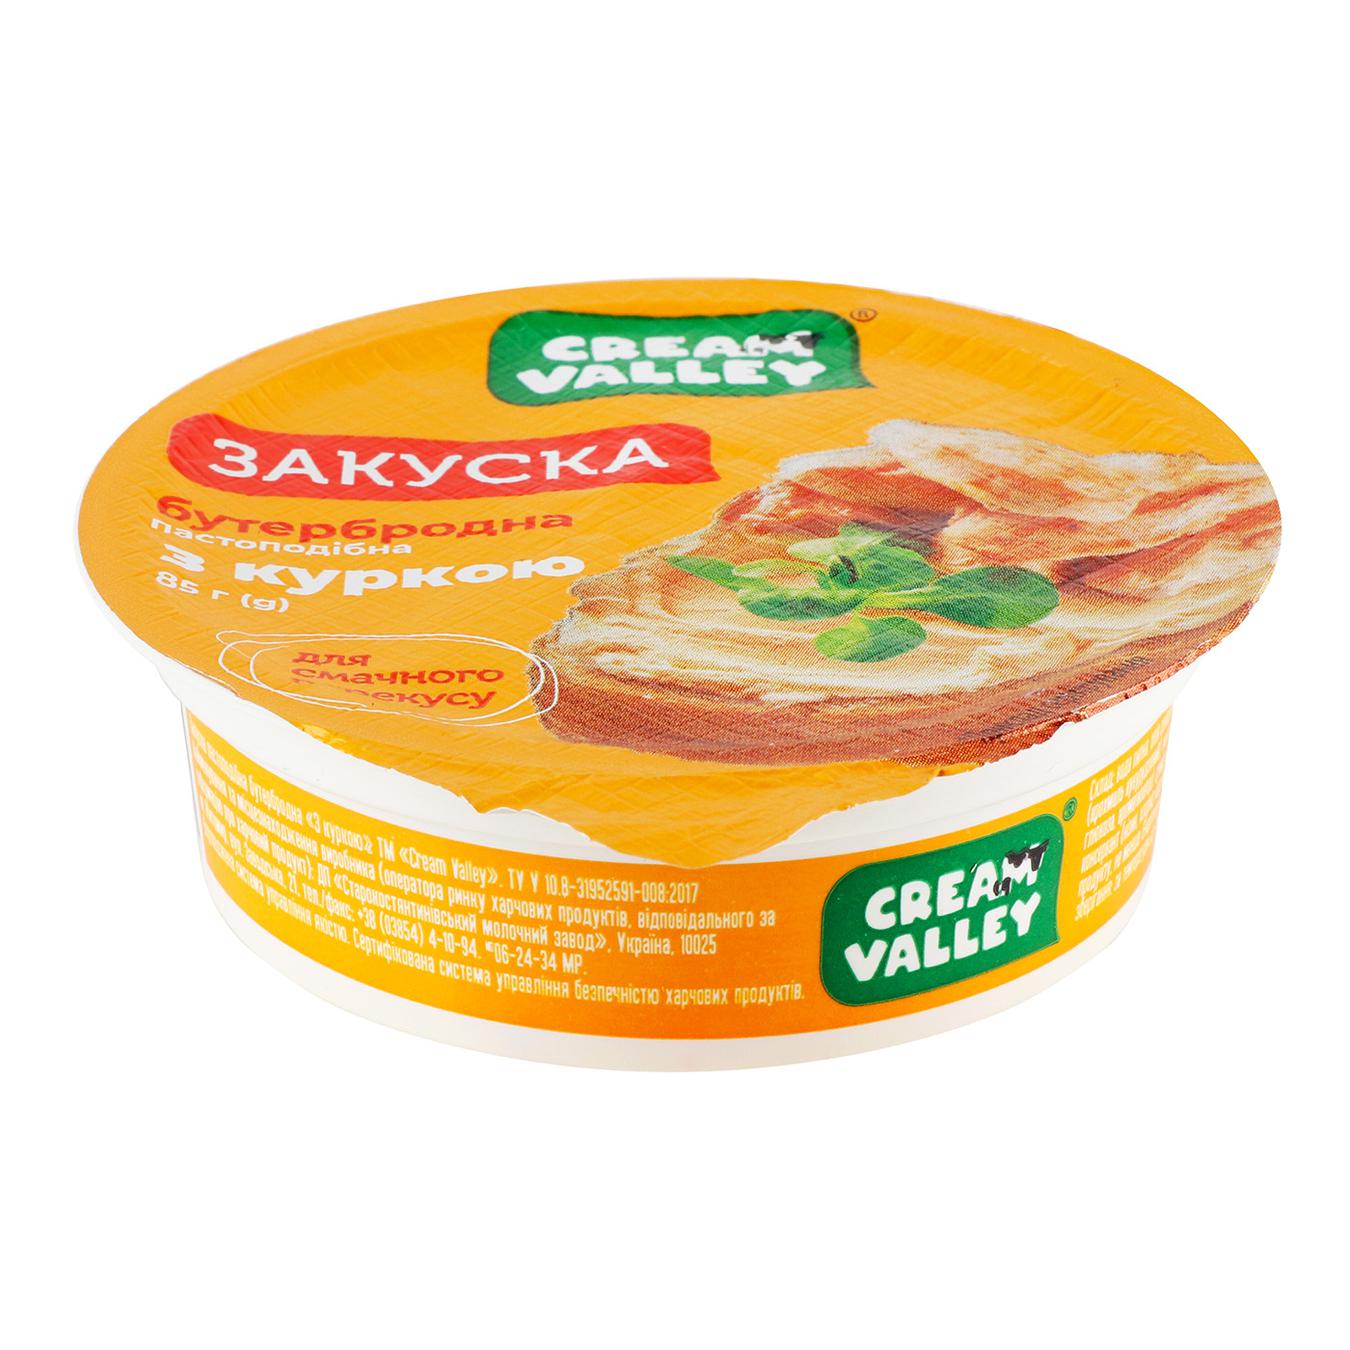 Cream Valley snack sandwich with chicken pasty 85g